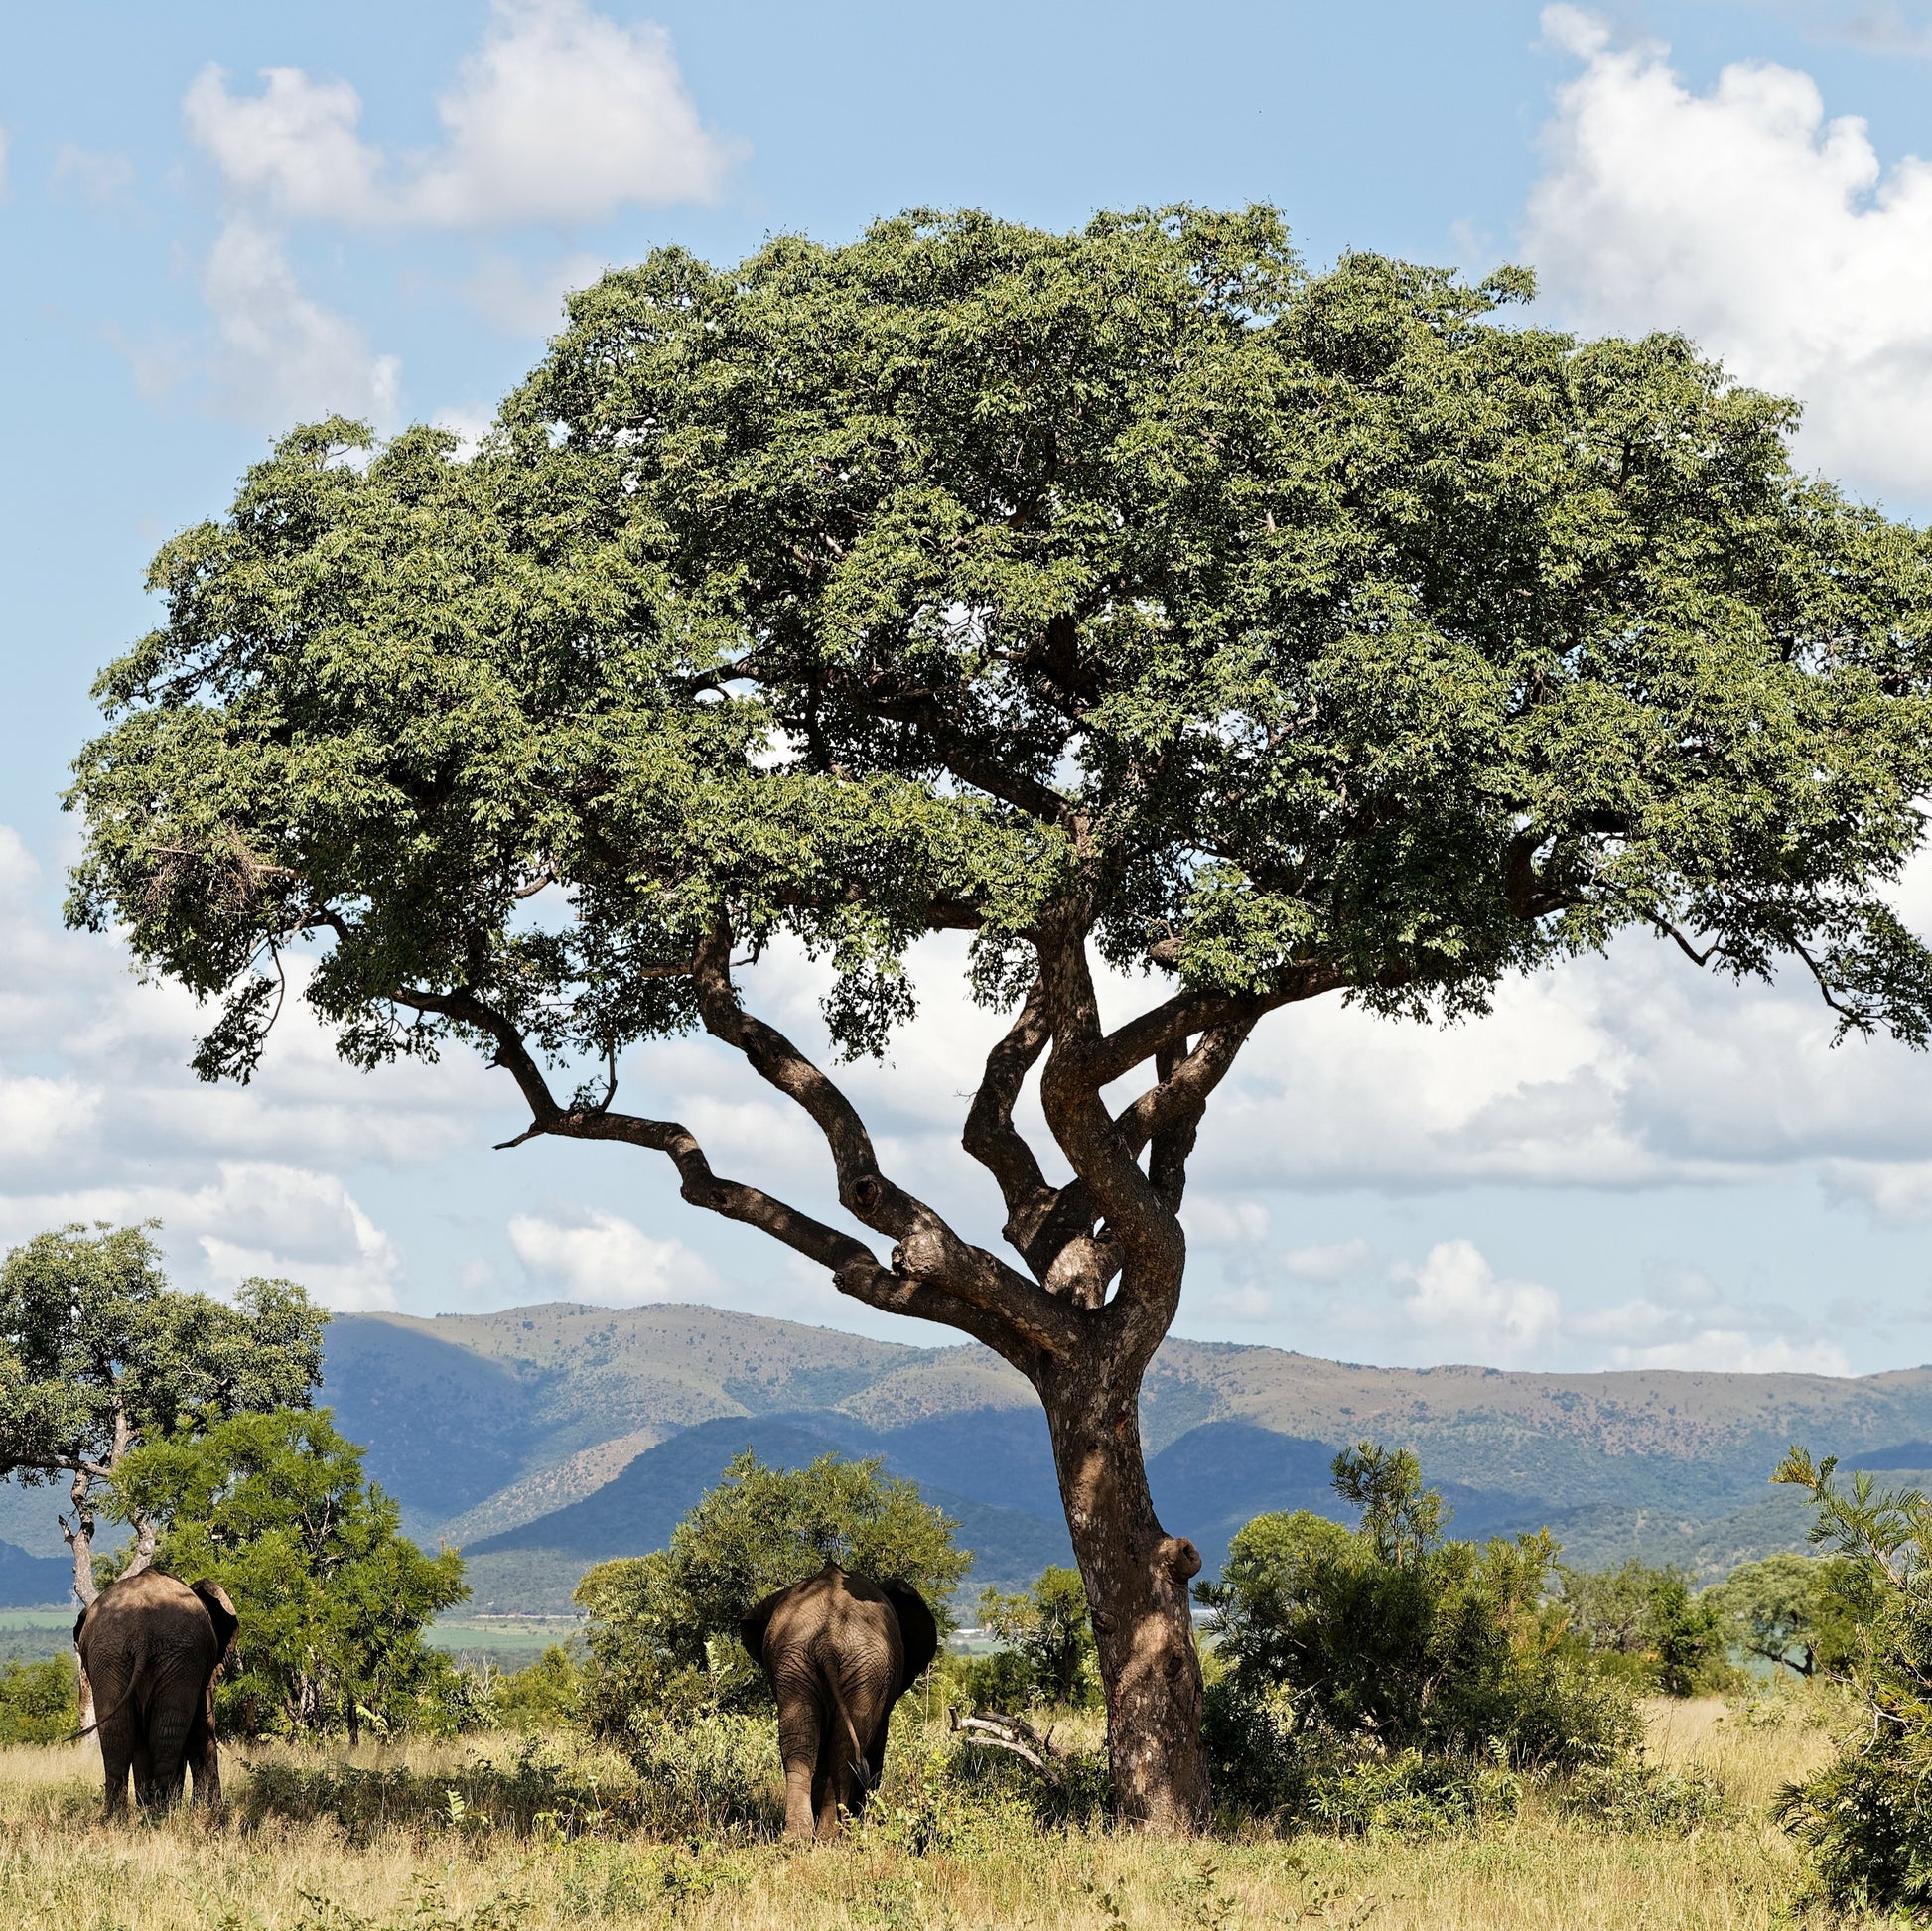 Marula tree in Namibia provides shade for elephants.